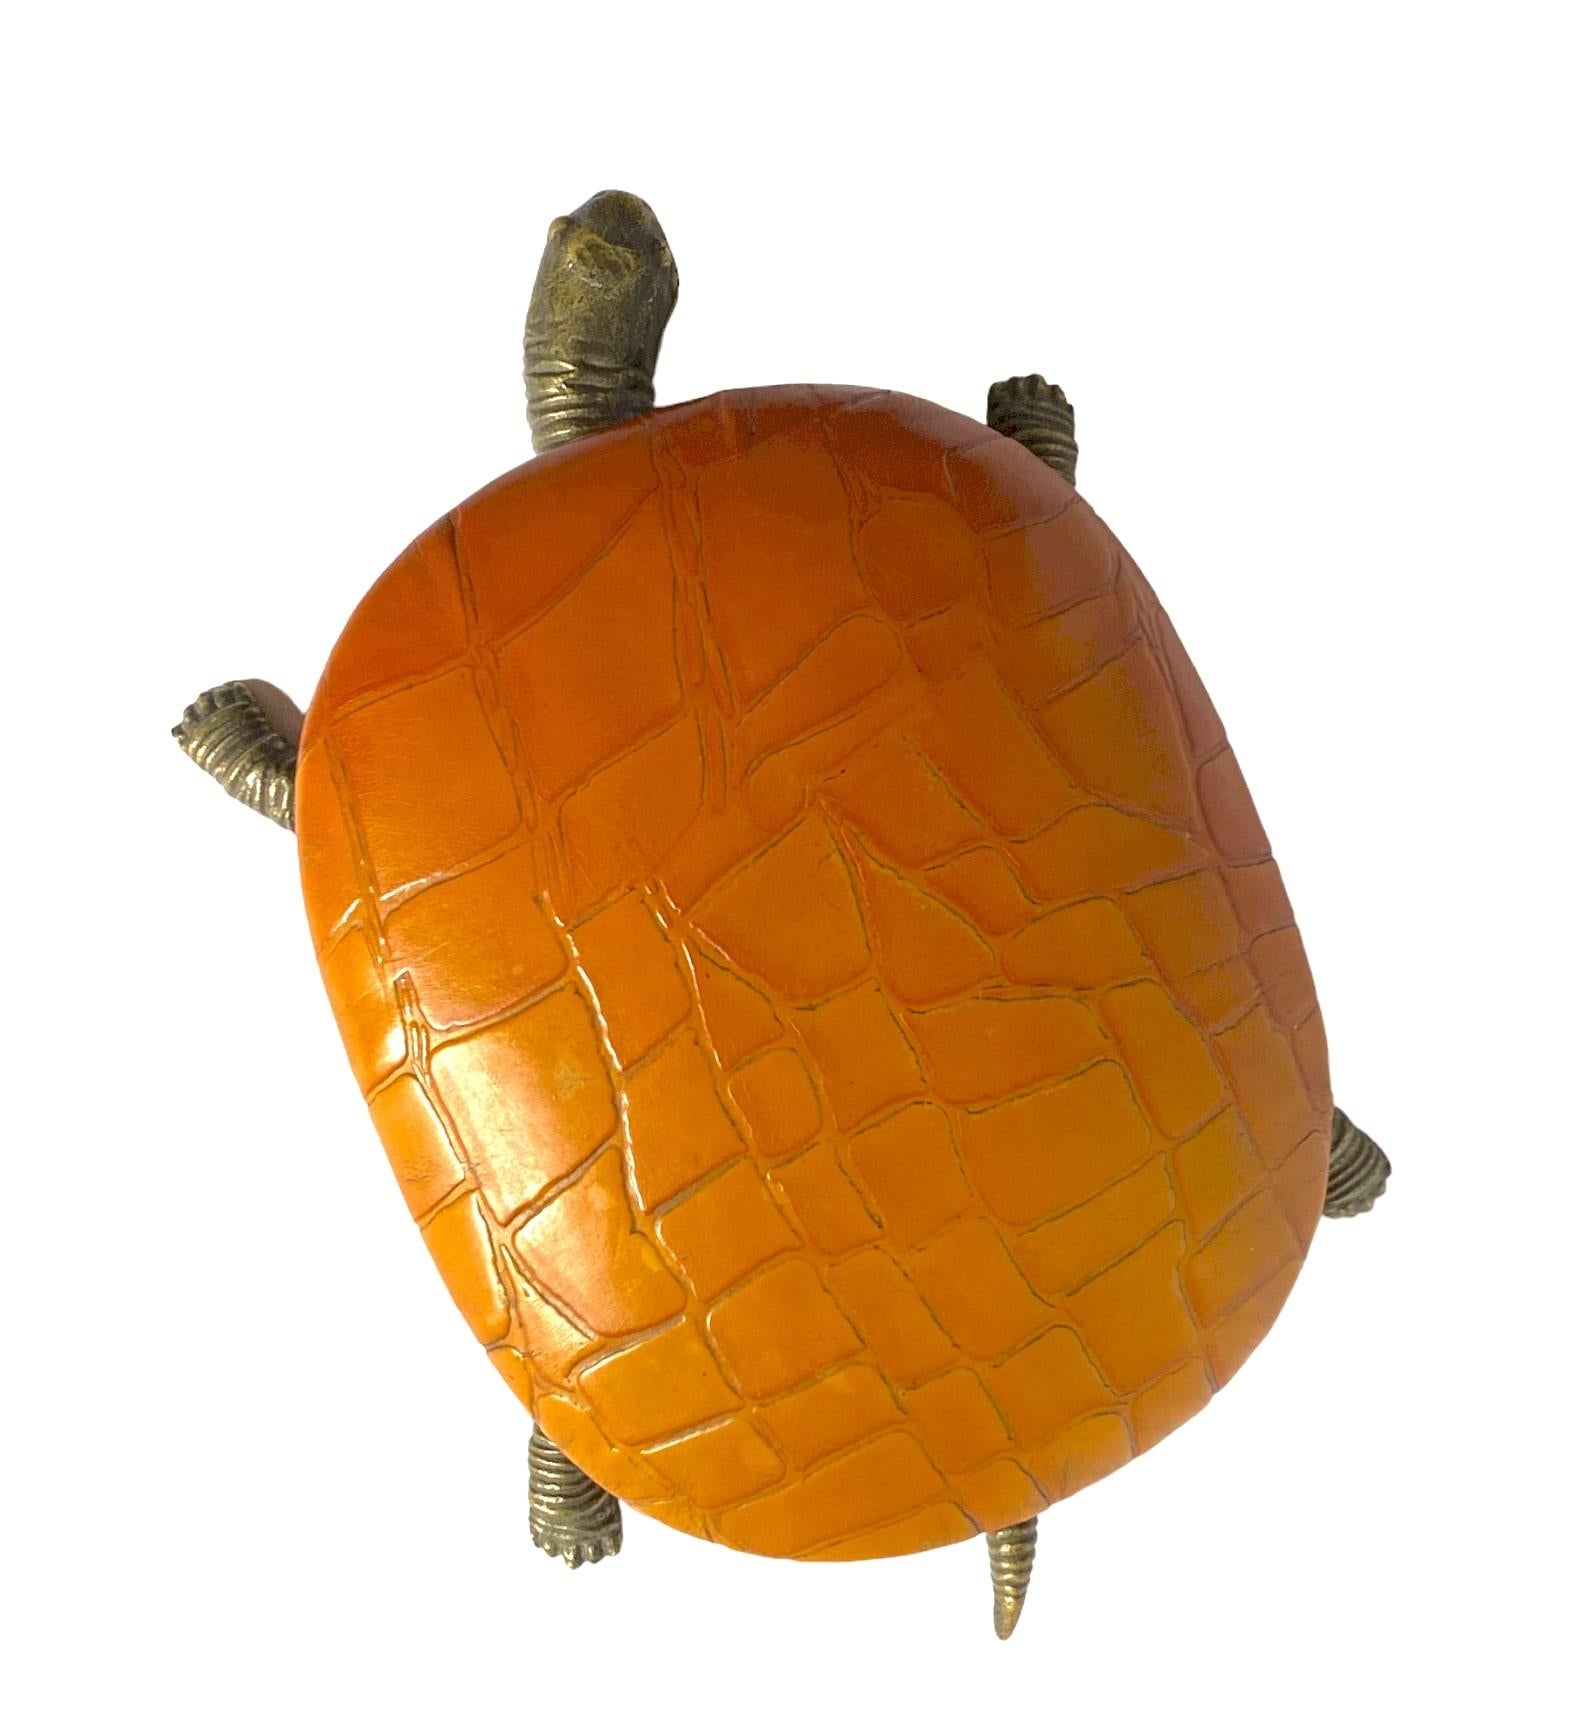 Hollywood-Regency / Midcentury-Schmuckkästchen in Schildkrötenform.

Frankreich 1950er / 1960er Jahre

Leder, Pergament und Bronze

Maße: 38 x 24 x 11 cm.

Markiert auf dem Sockel.

Condit: ausgezeichnet, entsprechend dem Alter und dem